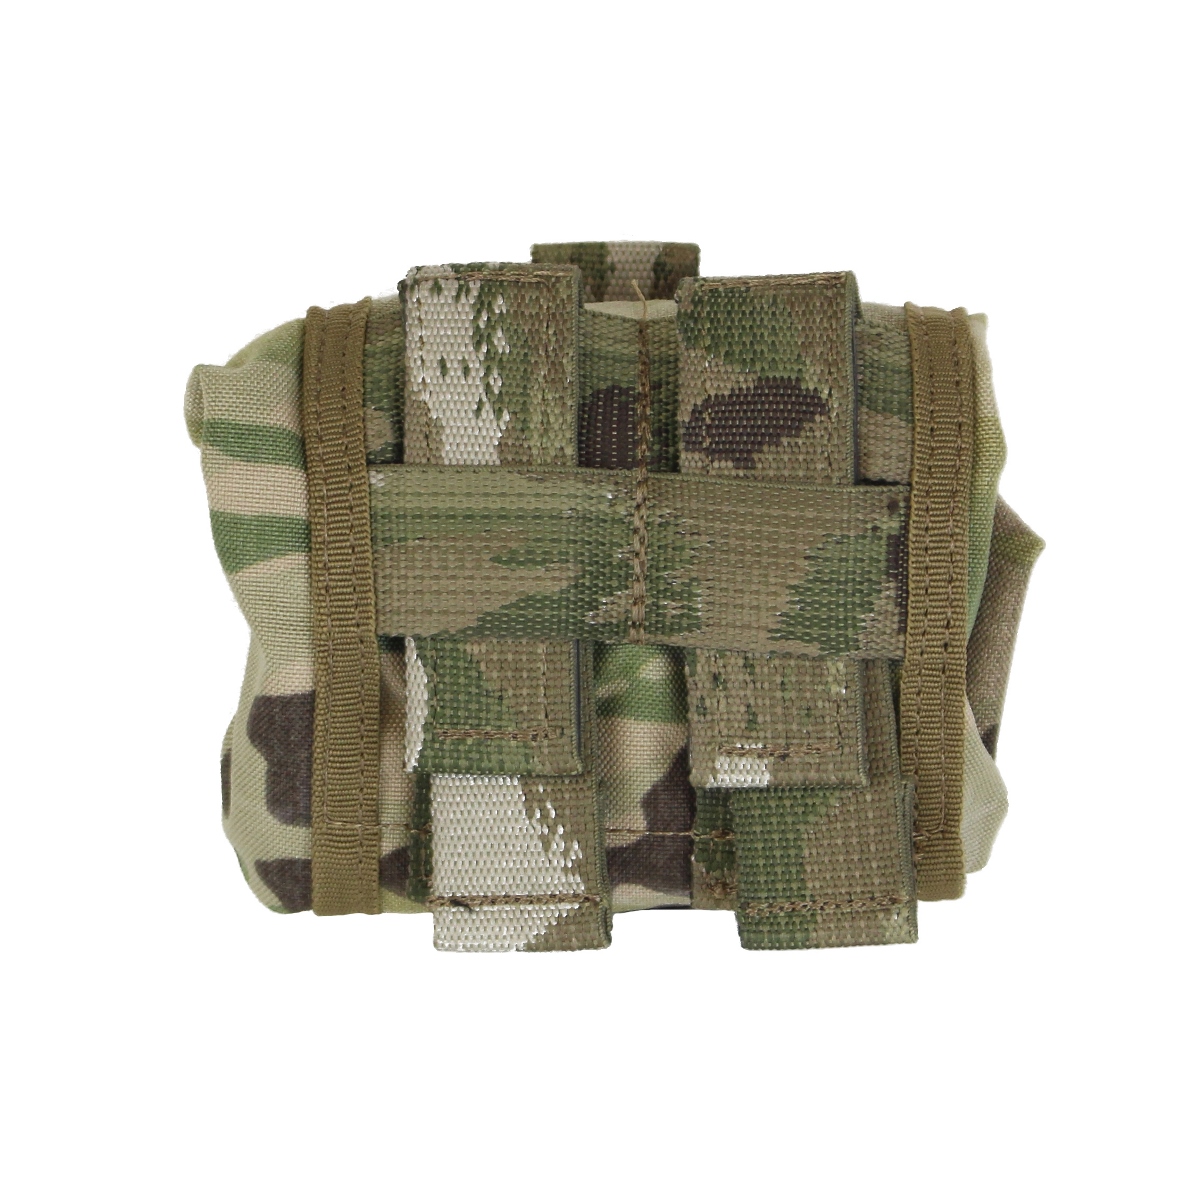 Odkrijte Karrimor SF zložljivo vojaško odlagalno torbico Predator Roll up QR-Modular. Vsestranska, robustna in prilagodljiva torbica za vojaške enote, specializirane policijske oddelke in outdoor entuziaste. Organizirajte in varno shranjujte svojo opremo 